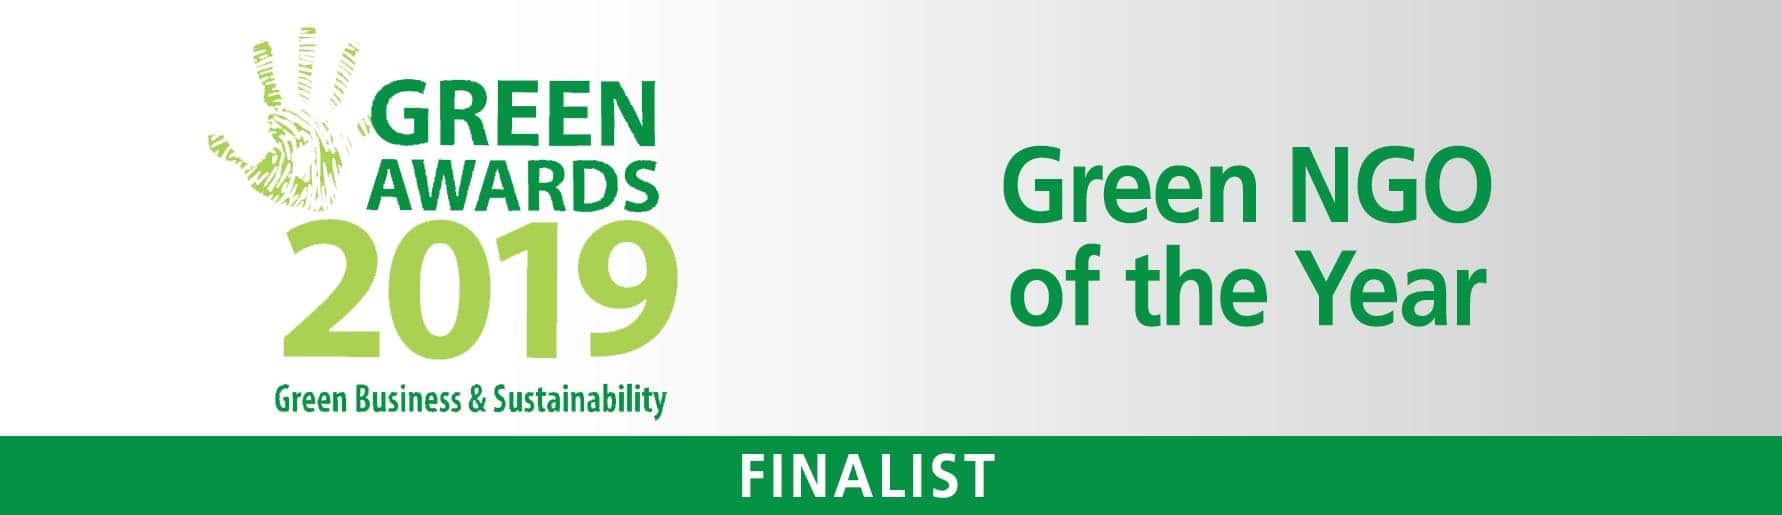 Green-NGO-Web-banner